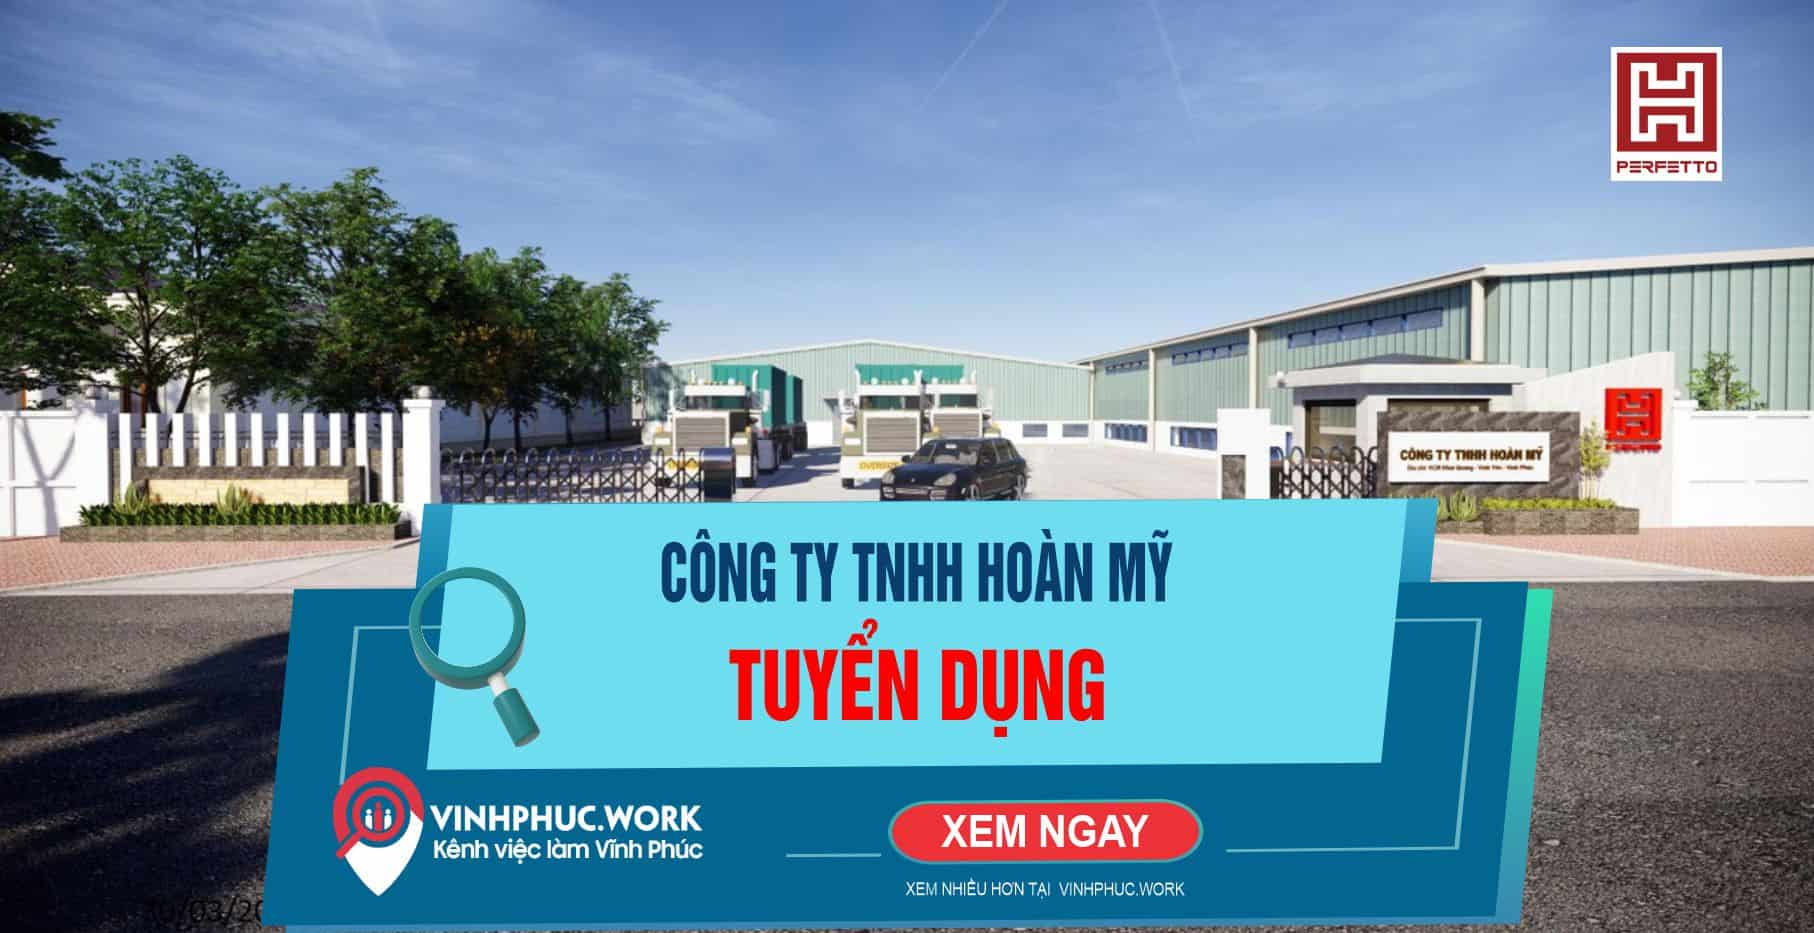 Cong Ty Tnhh Hoan My Thong Bao Tuyen Dung Nhan Vien An Toan Moi Truong 7